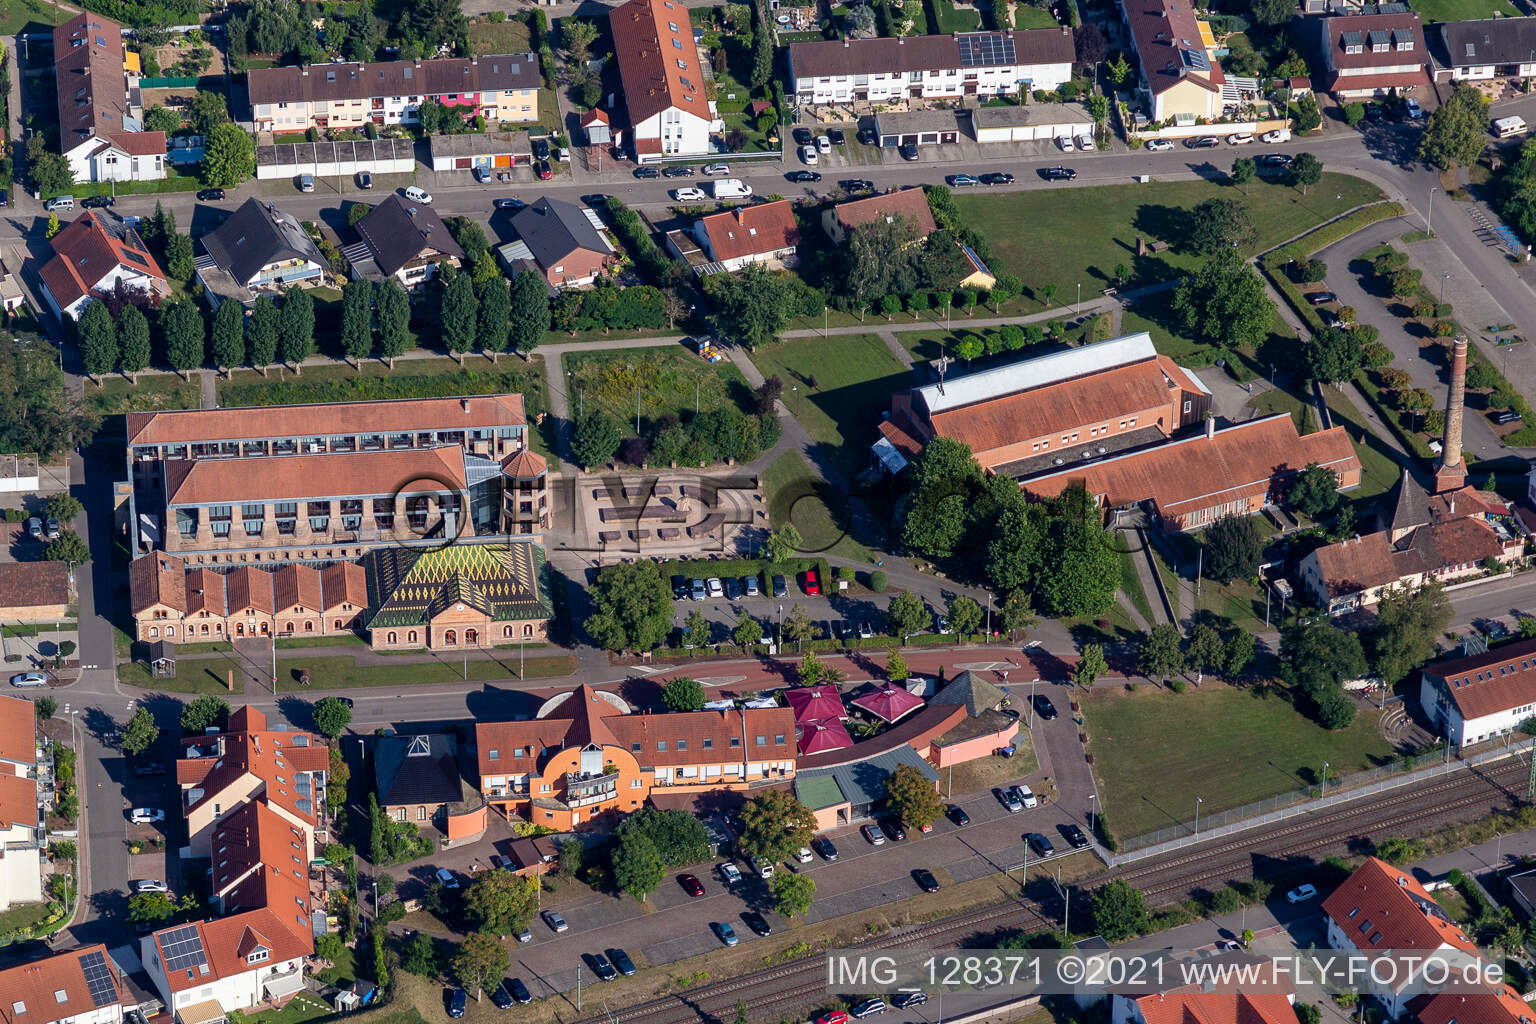 Vue aérienne de Ensemble de bâtiments du musée de la briqueterie Musée de l'ancienne briqueterie Ludovici à Jockgrim dans le département Rhénanie-Palatinat, Allemagne